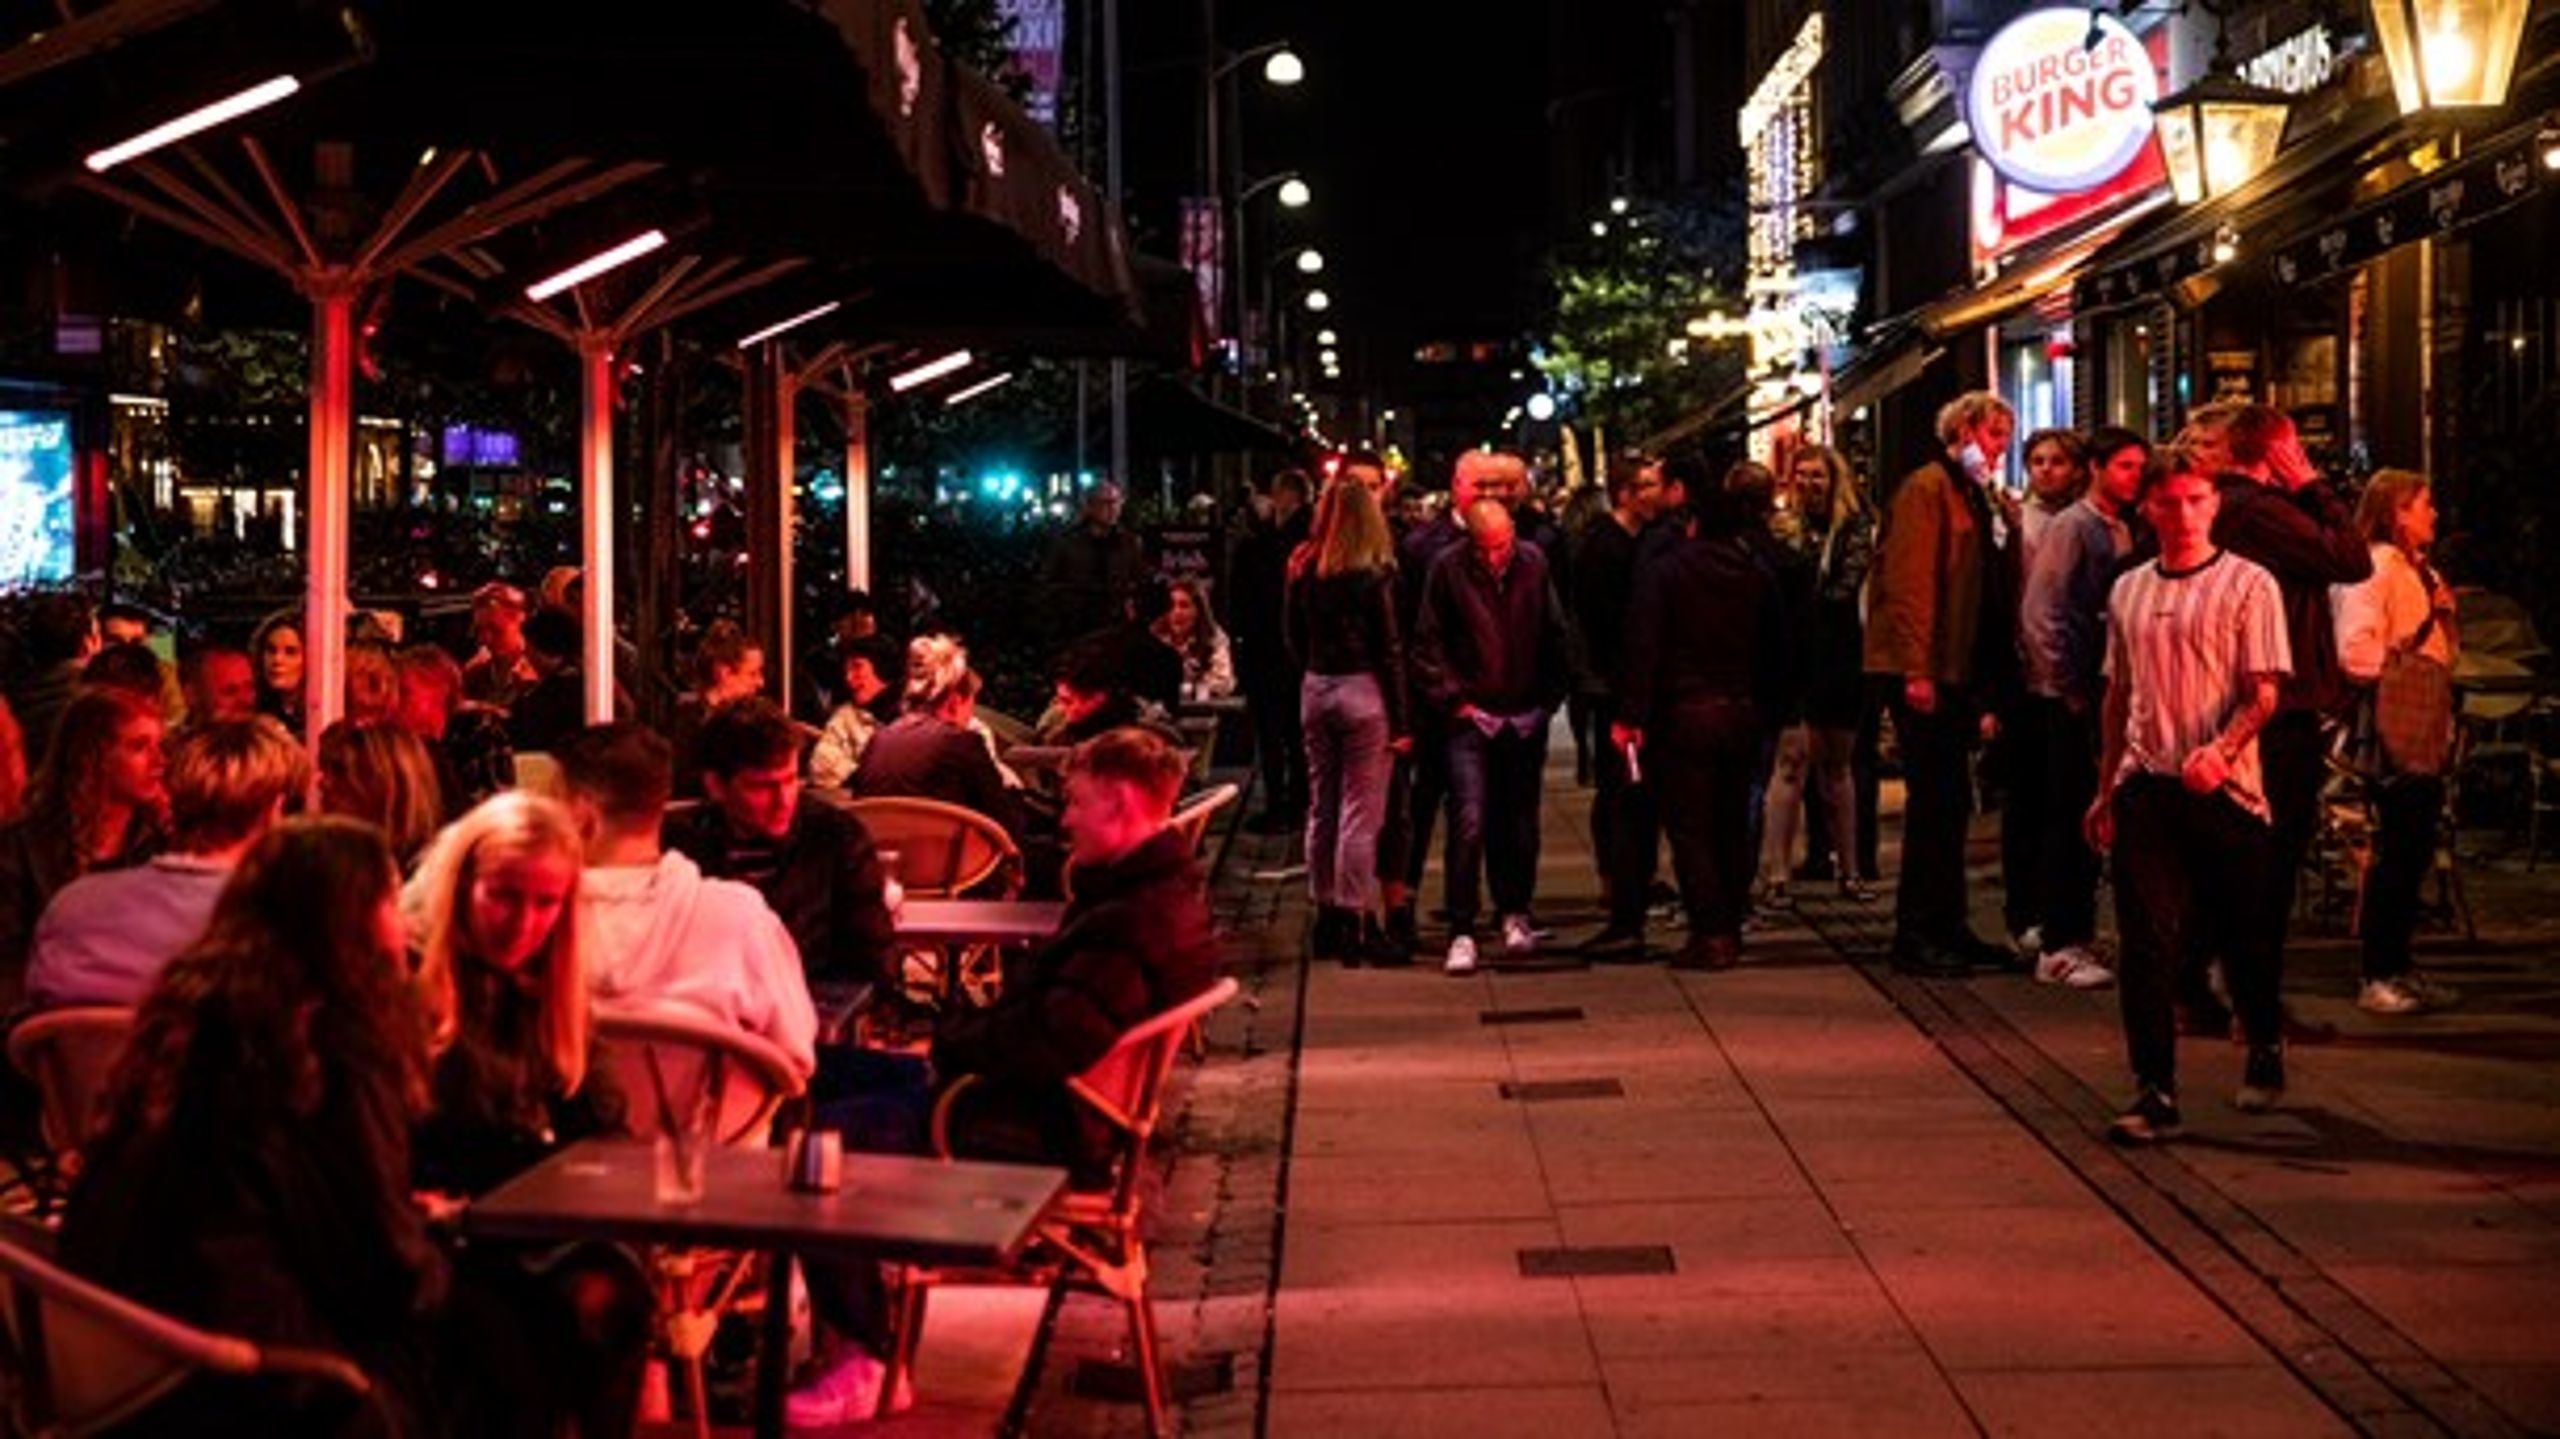 Københavns Kommunes&nbsp;nye restaurations- og nattelivsplan bør understøtte, at størstedelen af branchen overlever coronakrisen, skriver Cecilia Lonning-Skovgaard (V).